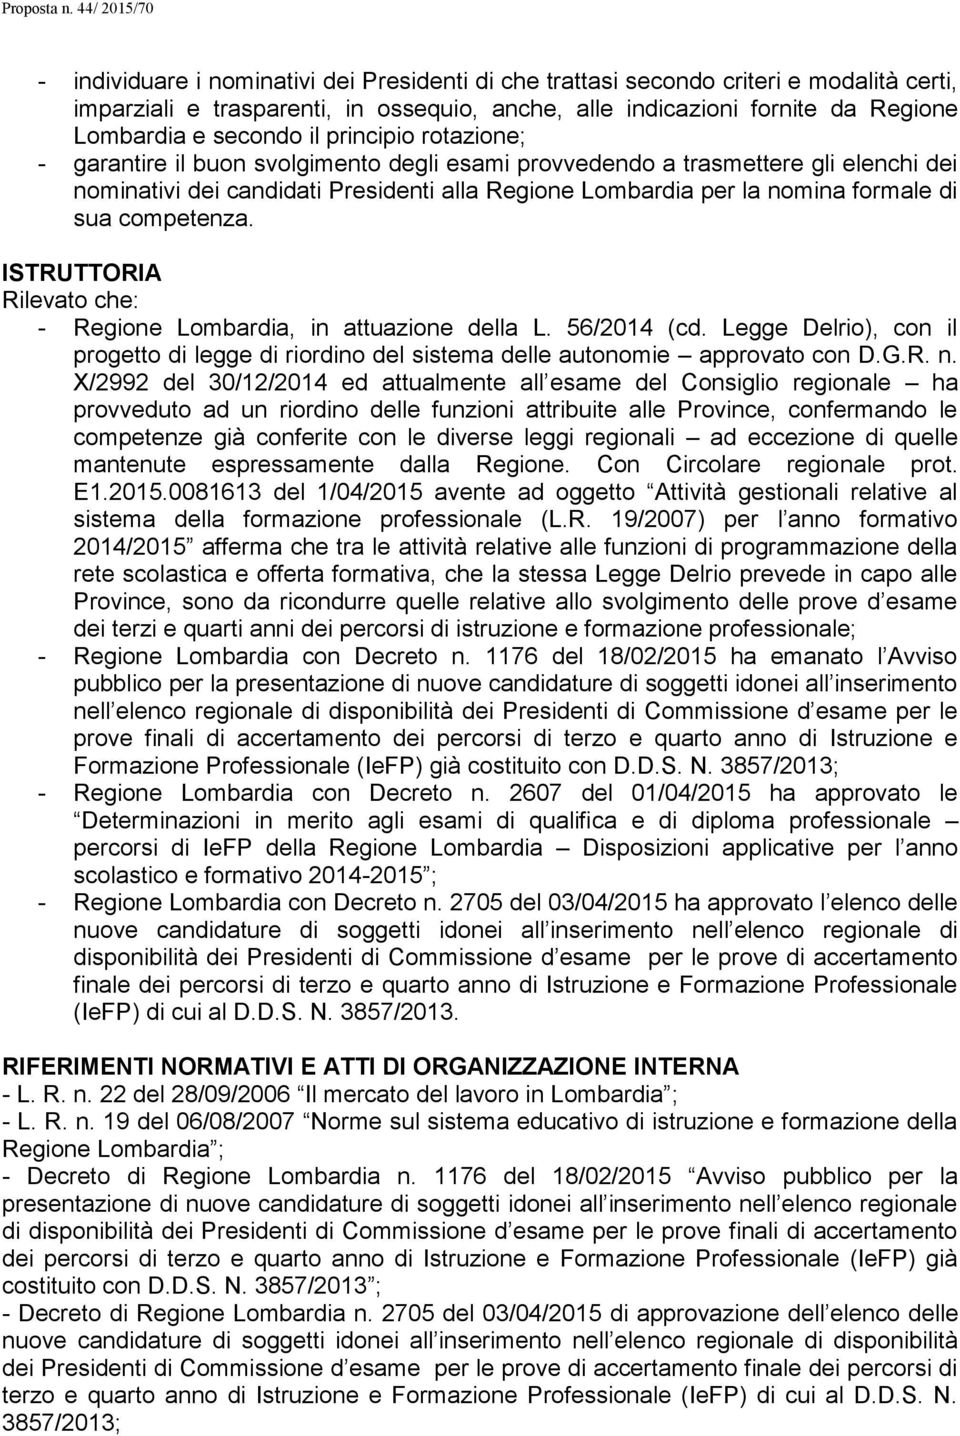 competenza. ISTRUTTORIA Rilevato che: - Regione Lombardia, in attuazione della L. 56/2014 (cd. Legge Delrio), con il progetto di legge di riordino del sistema delle autonomie approvato con D.G.R. n.